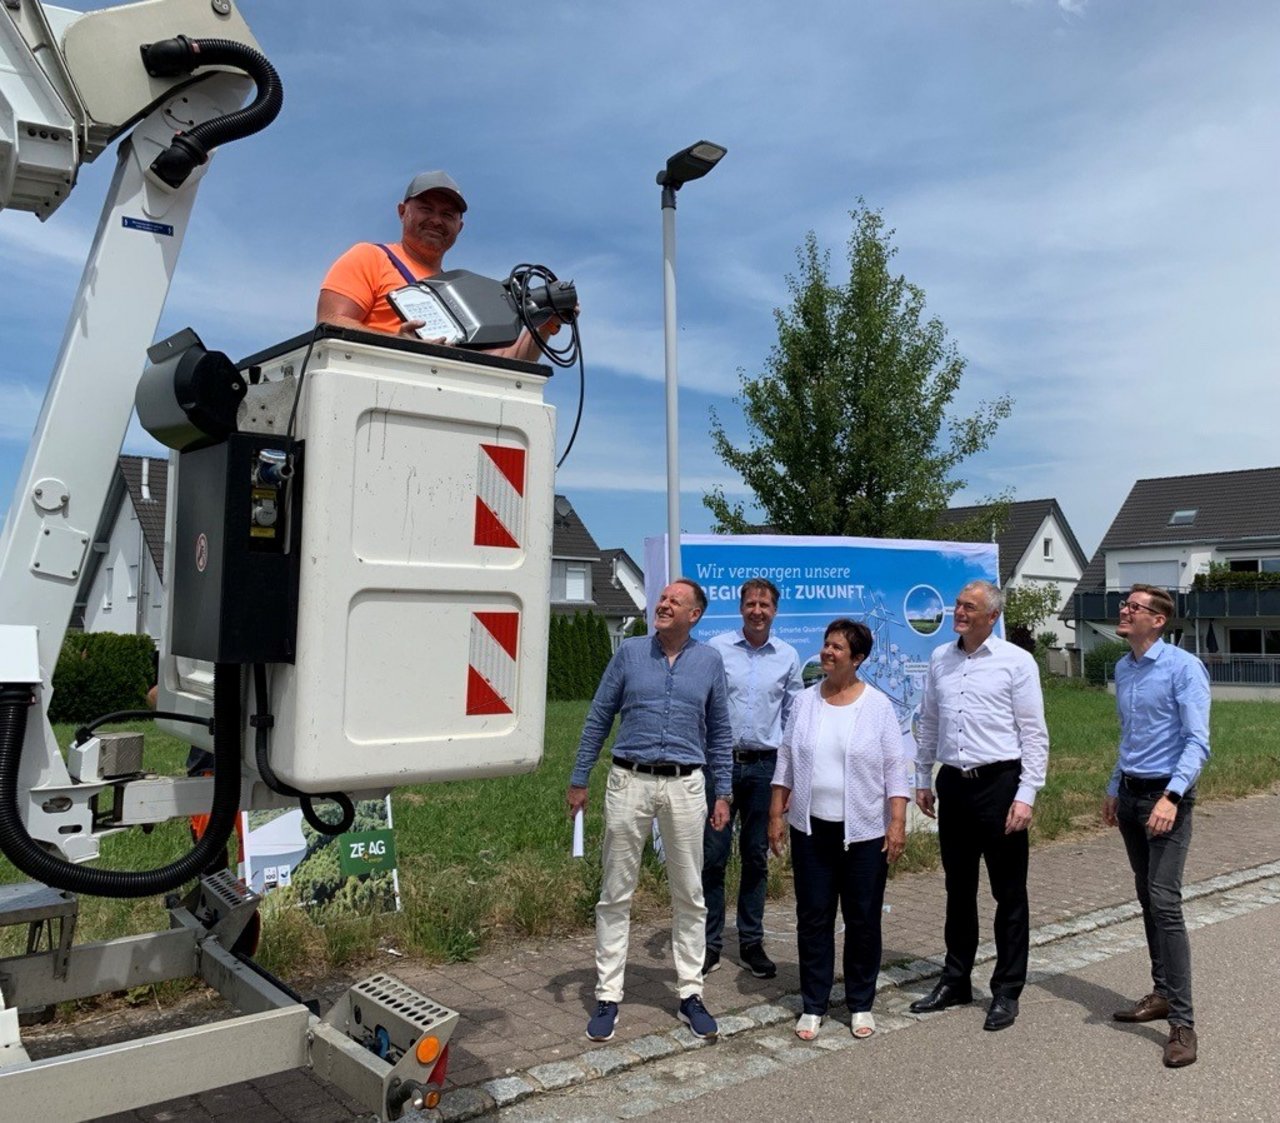 v.l.n.r.: Mitarbeiter der ZEAG Energie AG, H. Taubald von der Stadtverwaltung sowie Bürgermeisterin Ute Zoll beim Pressetermin im Juni zur Umstellung der Straßenbeleuchtung auf energiesparende LED-Leuchten.